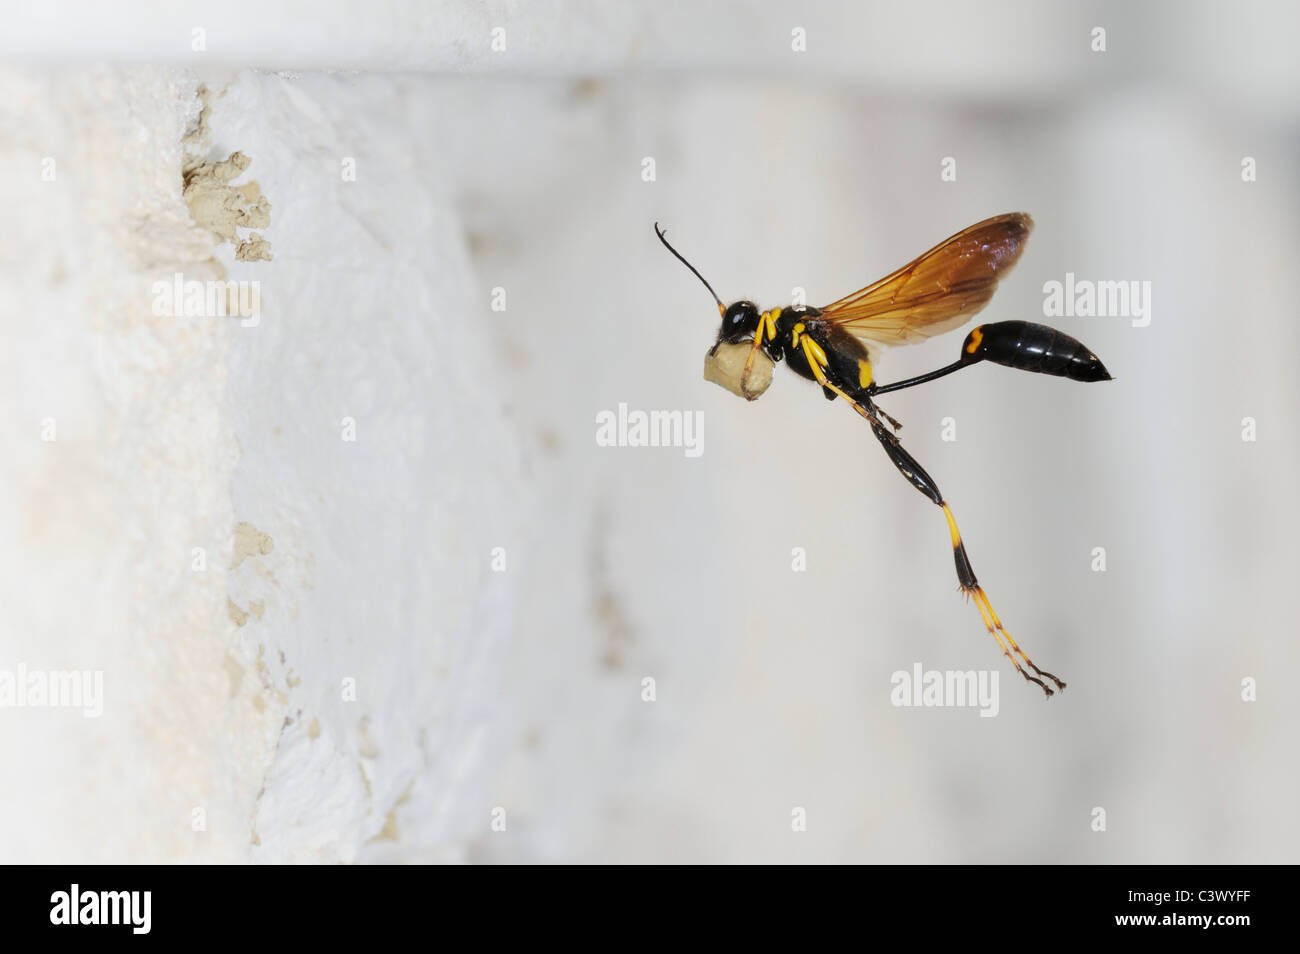 Bola de barro negro y amarillo (Sceliphron caementarium), hembra en vuelo llevando barro para anidar la pared interior, Comal County, Texas Foto de stock